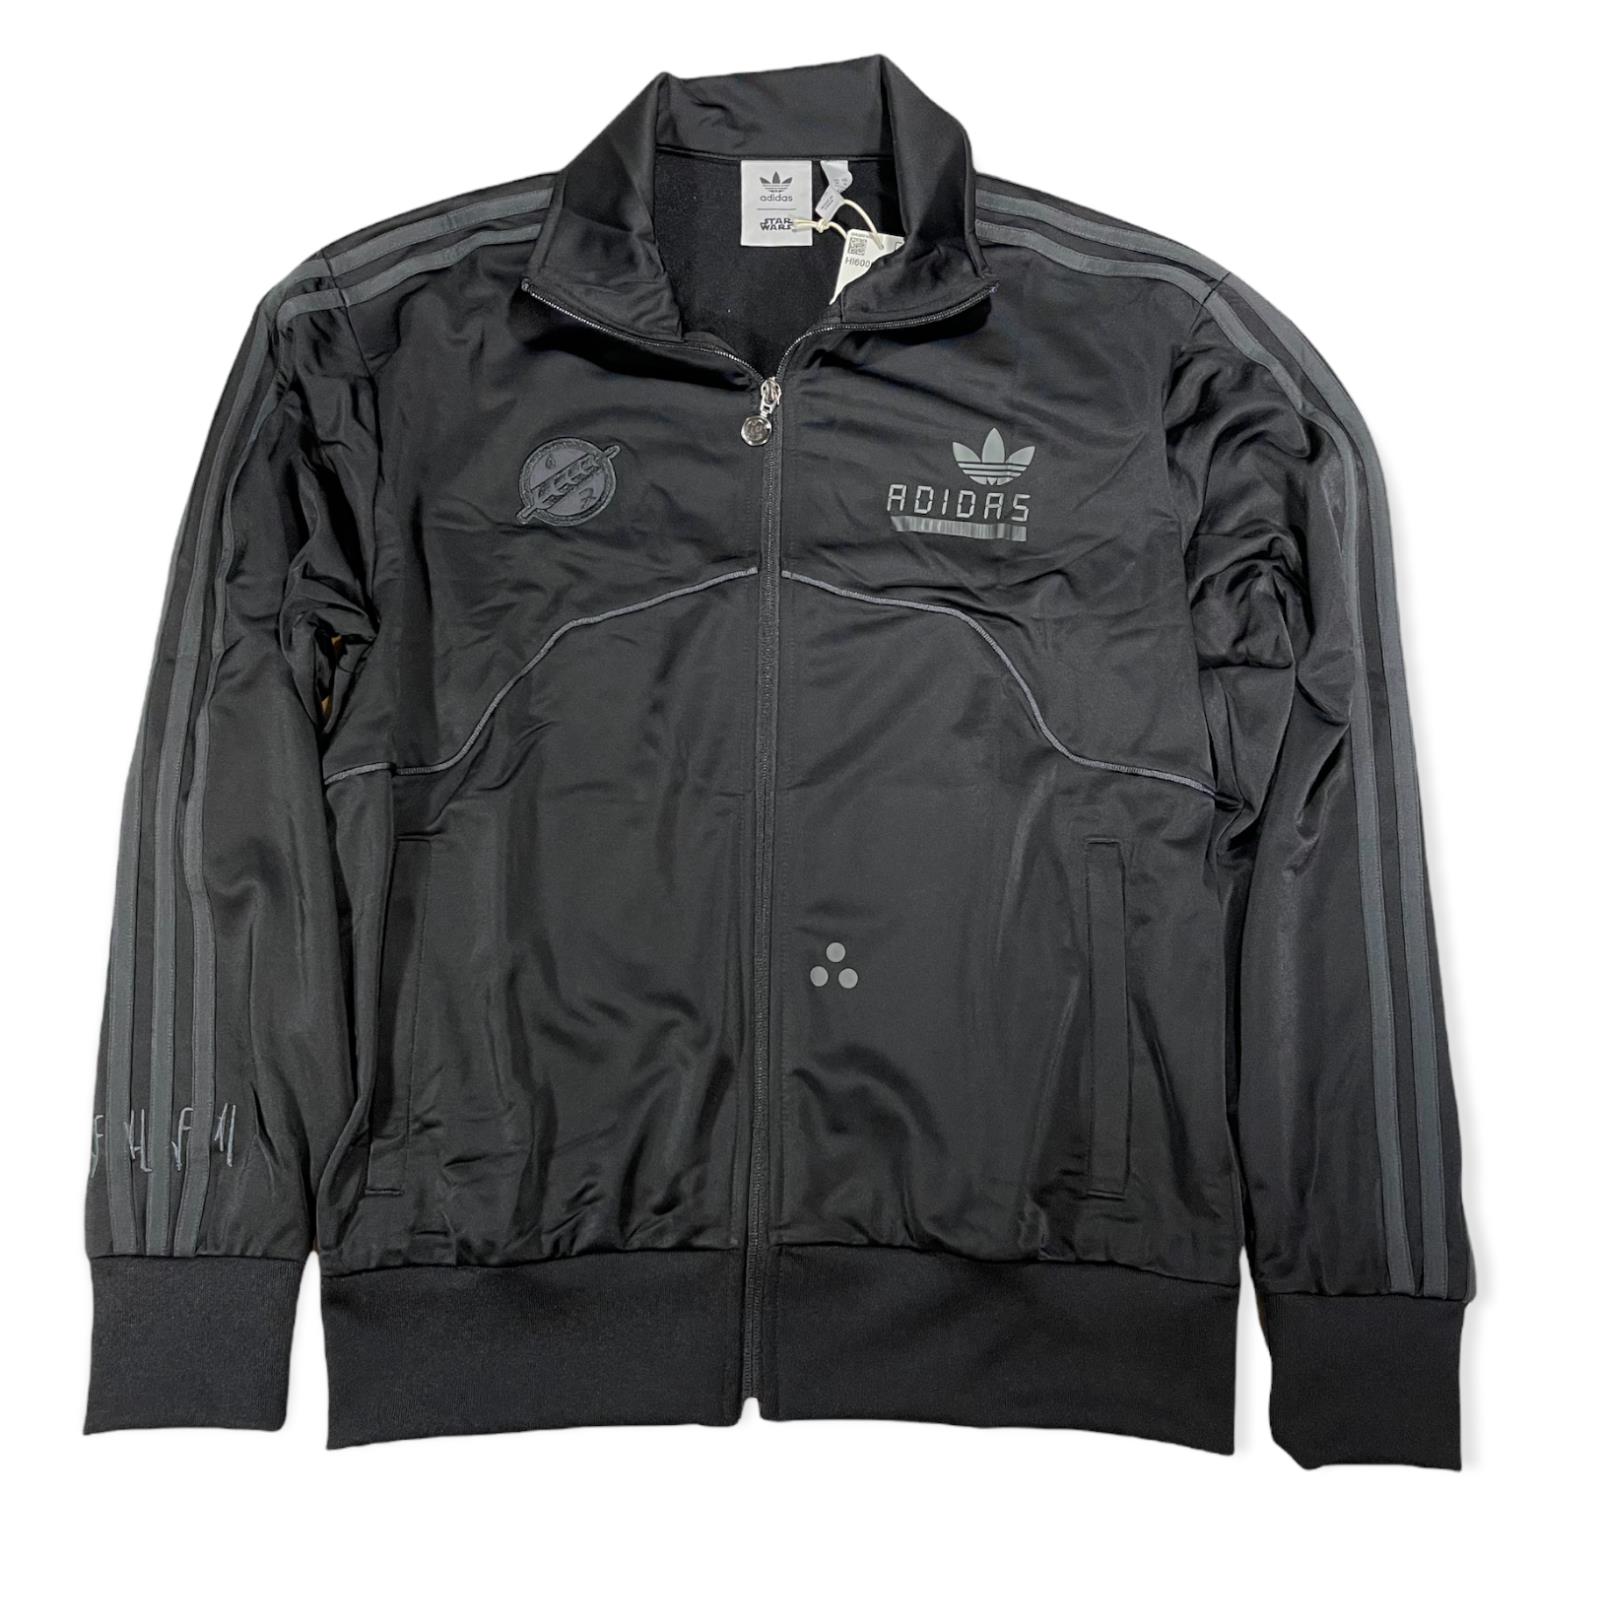 Adidas Star Wars Boba Fett Firebird Track Top Jacket Black HI6000 Men`s Medium M